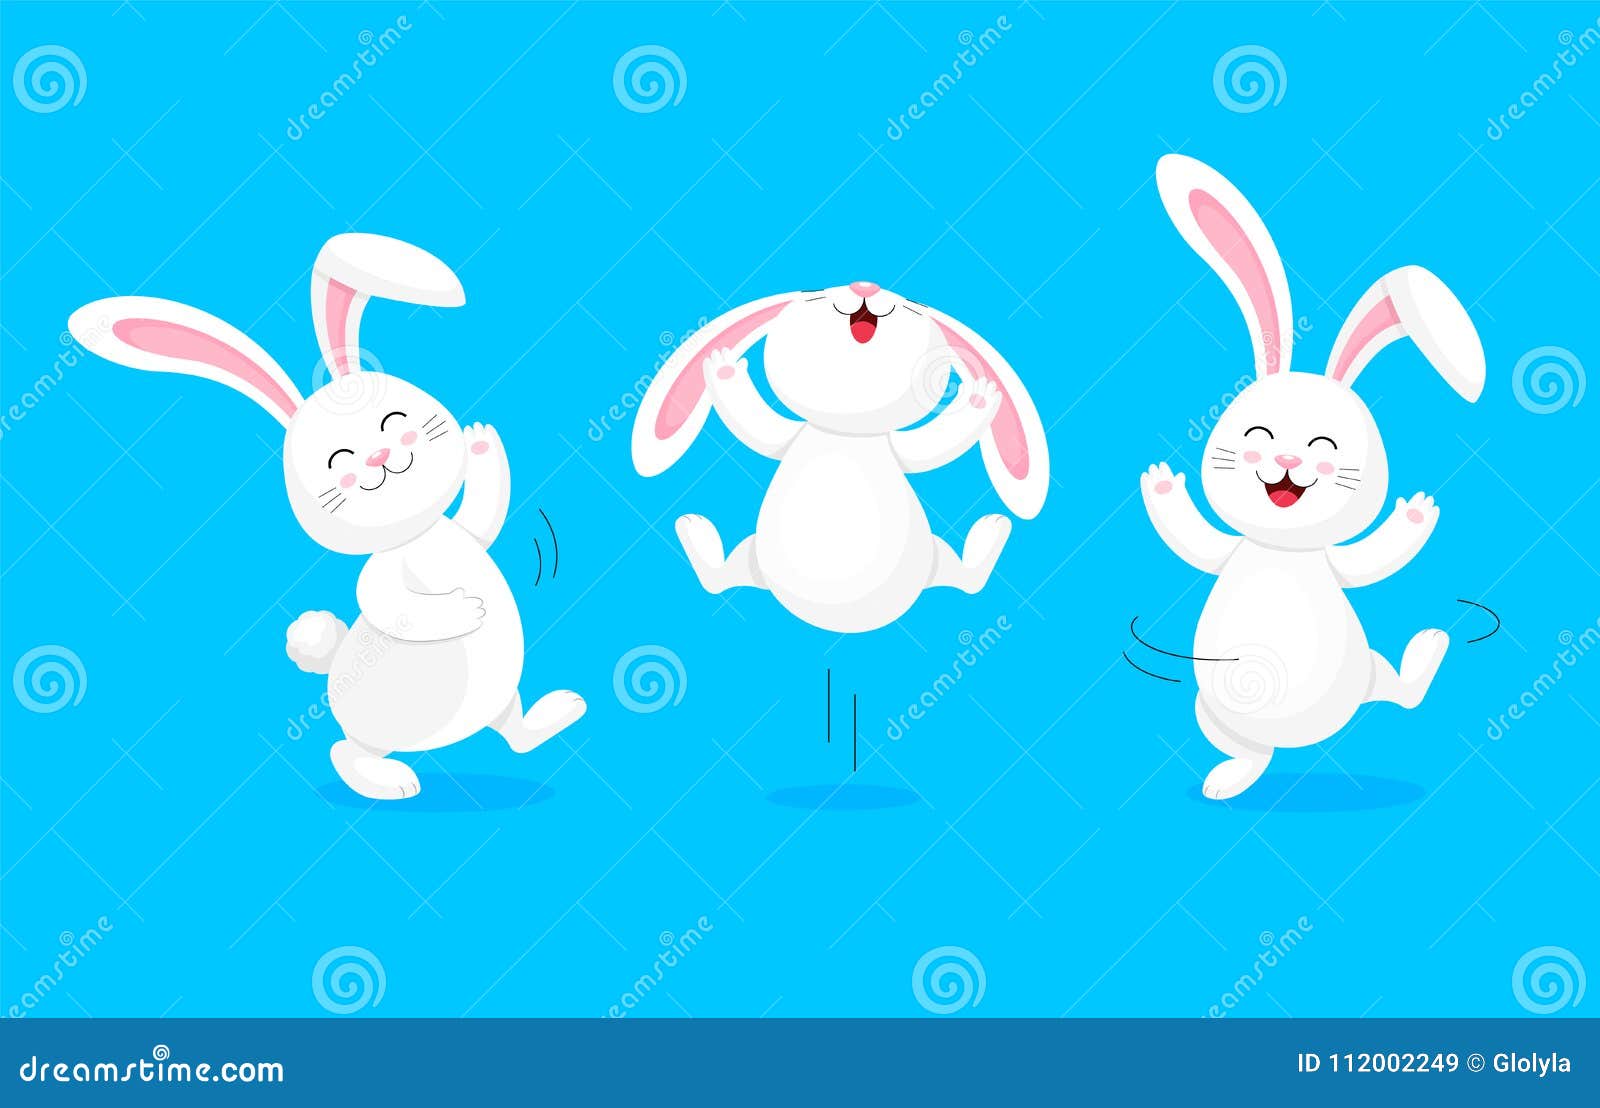 Заяц пляшет. Заяц танцует. Танцующие зайцы. Зайцы пляшут. Зайка на синем фоне.